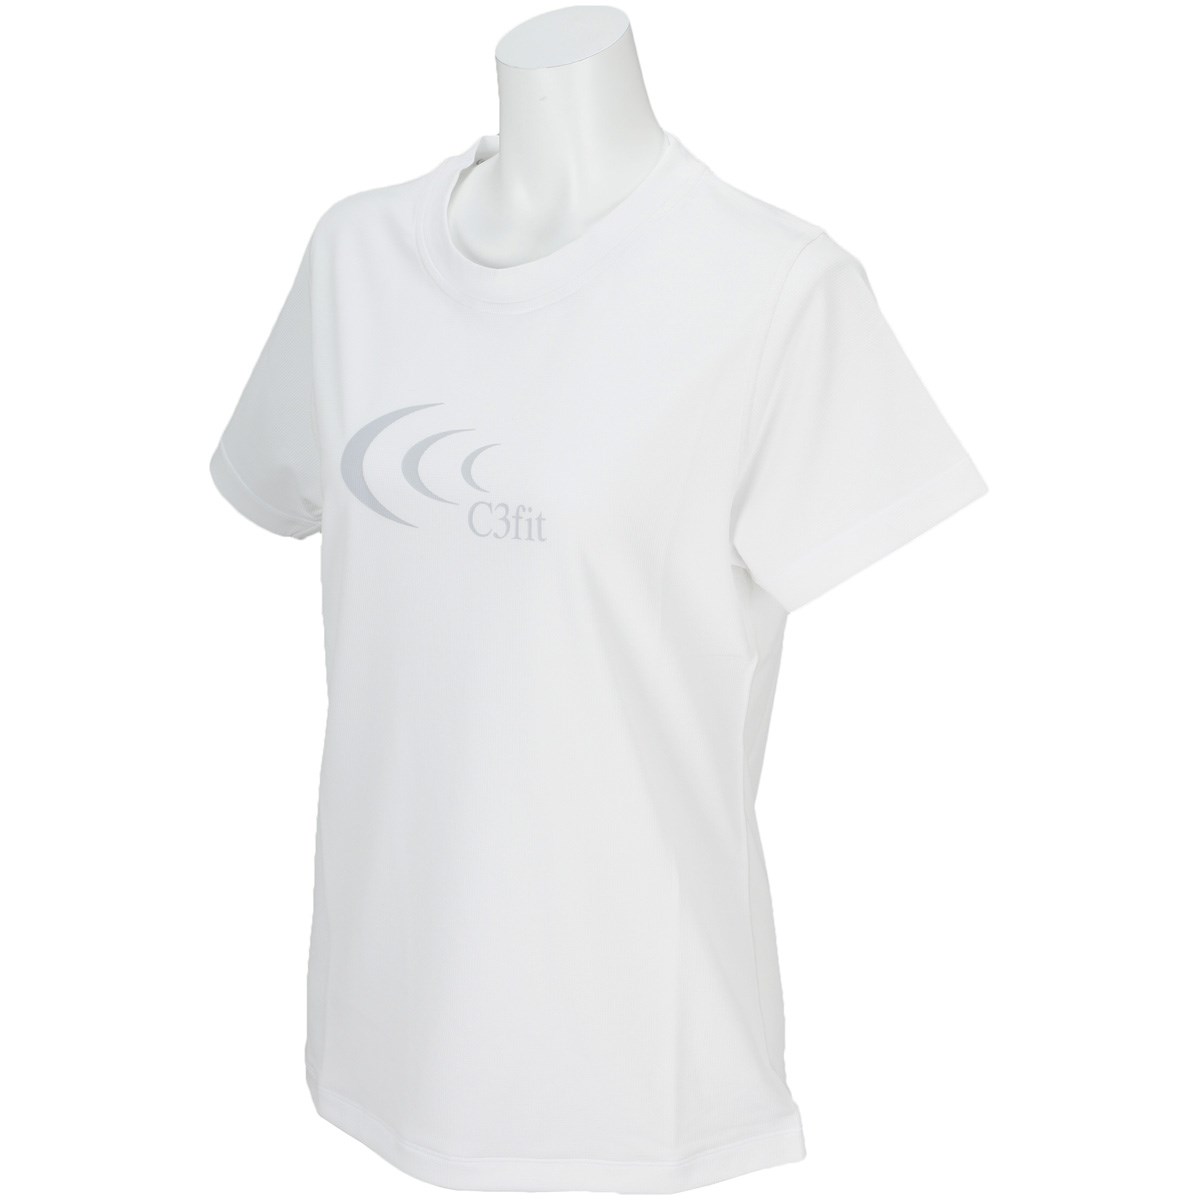 [アウトレット] [在庫限りのお買い得商品] C3fit アルファドライビッグロゴ半袖Tシャツ ゴルフウェアの大画像